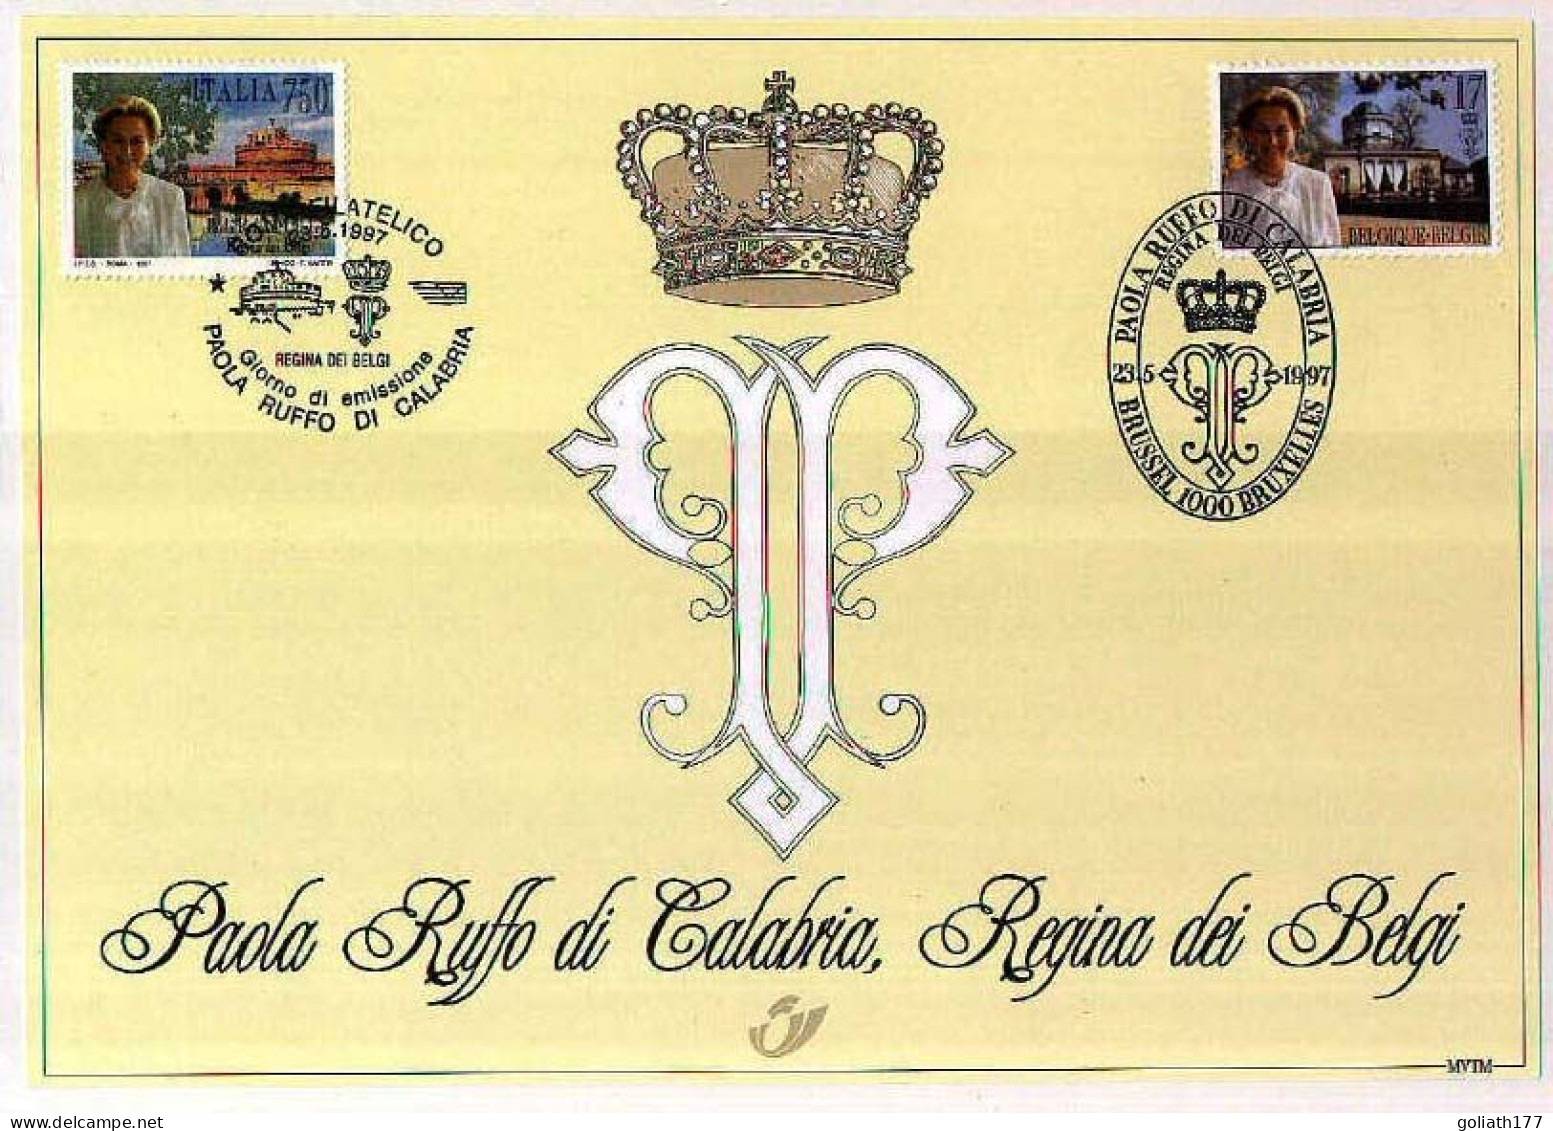 2706HK - Herdenkingskaart "Koningin Paola" - Souvenir Cards - Joint Issues [HK]